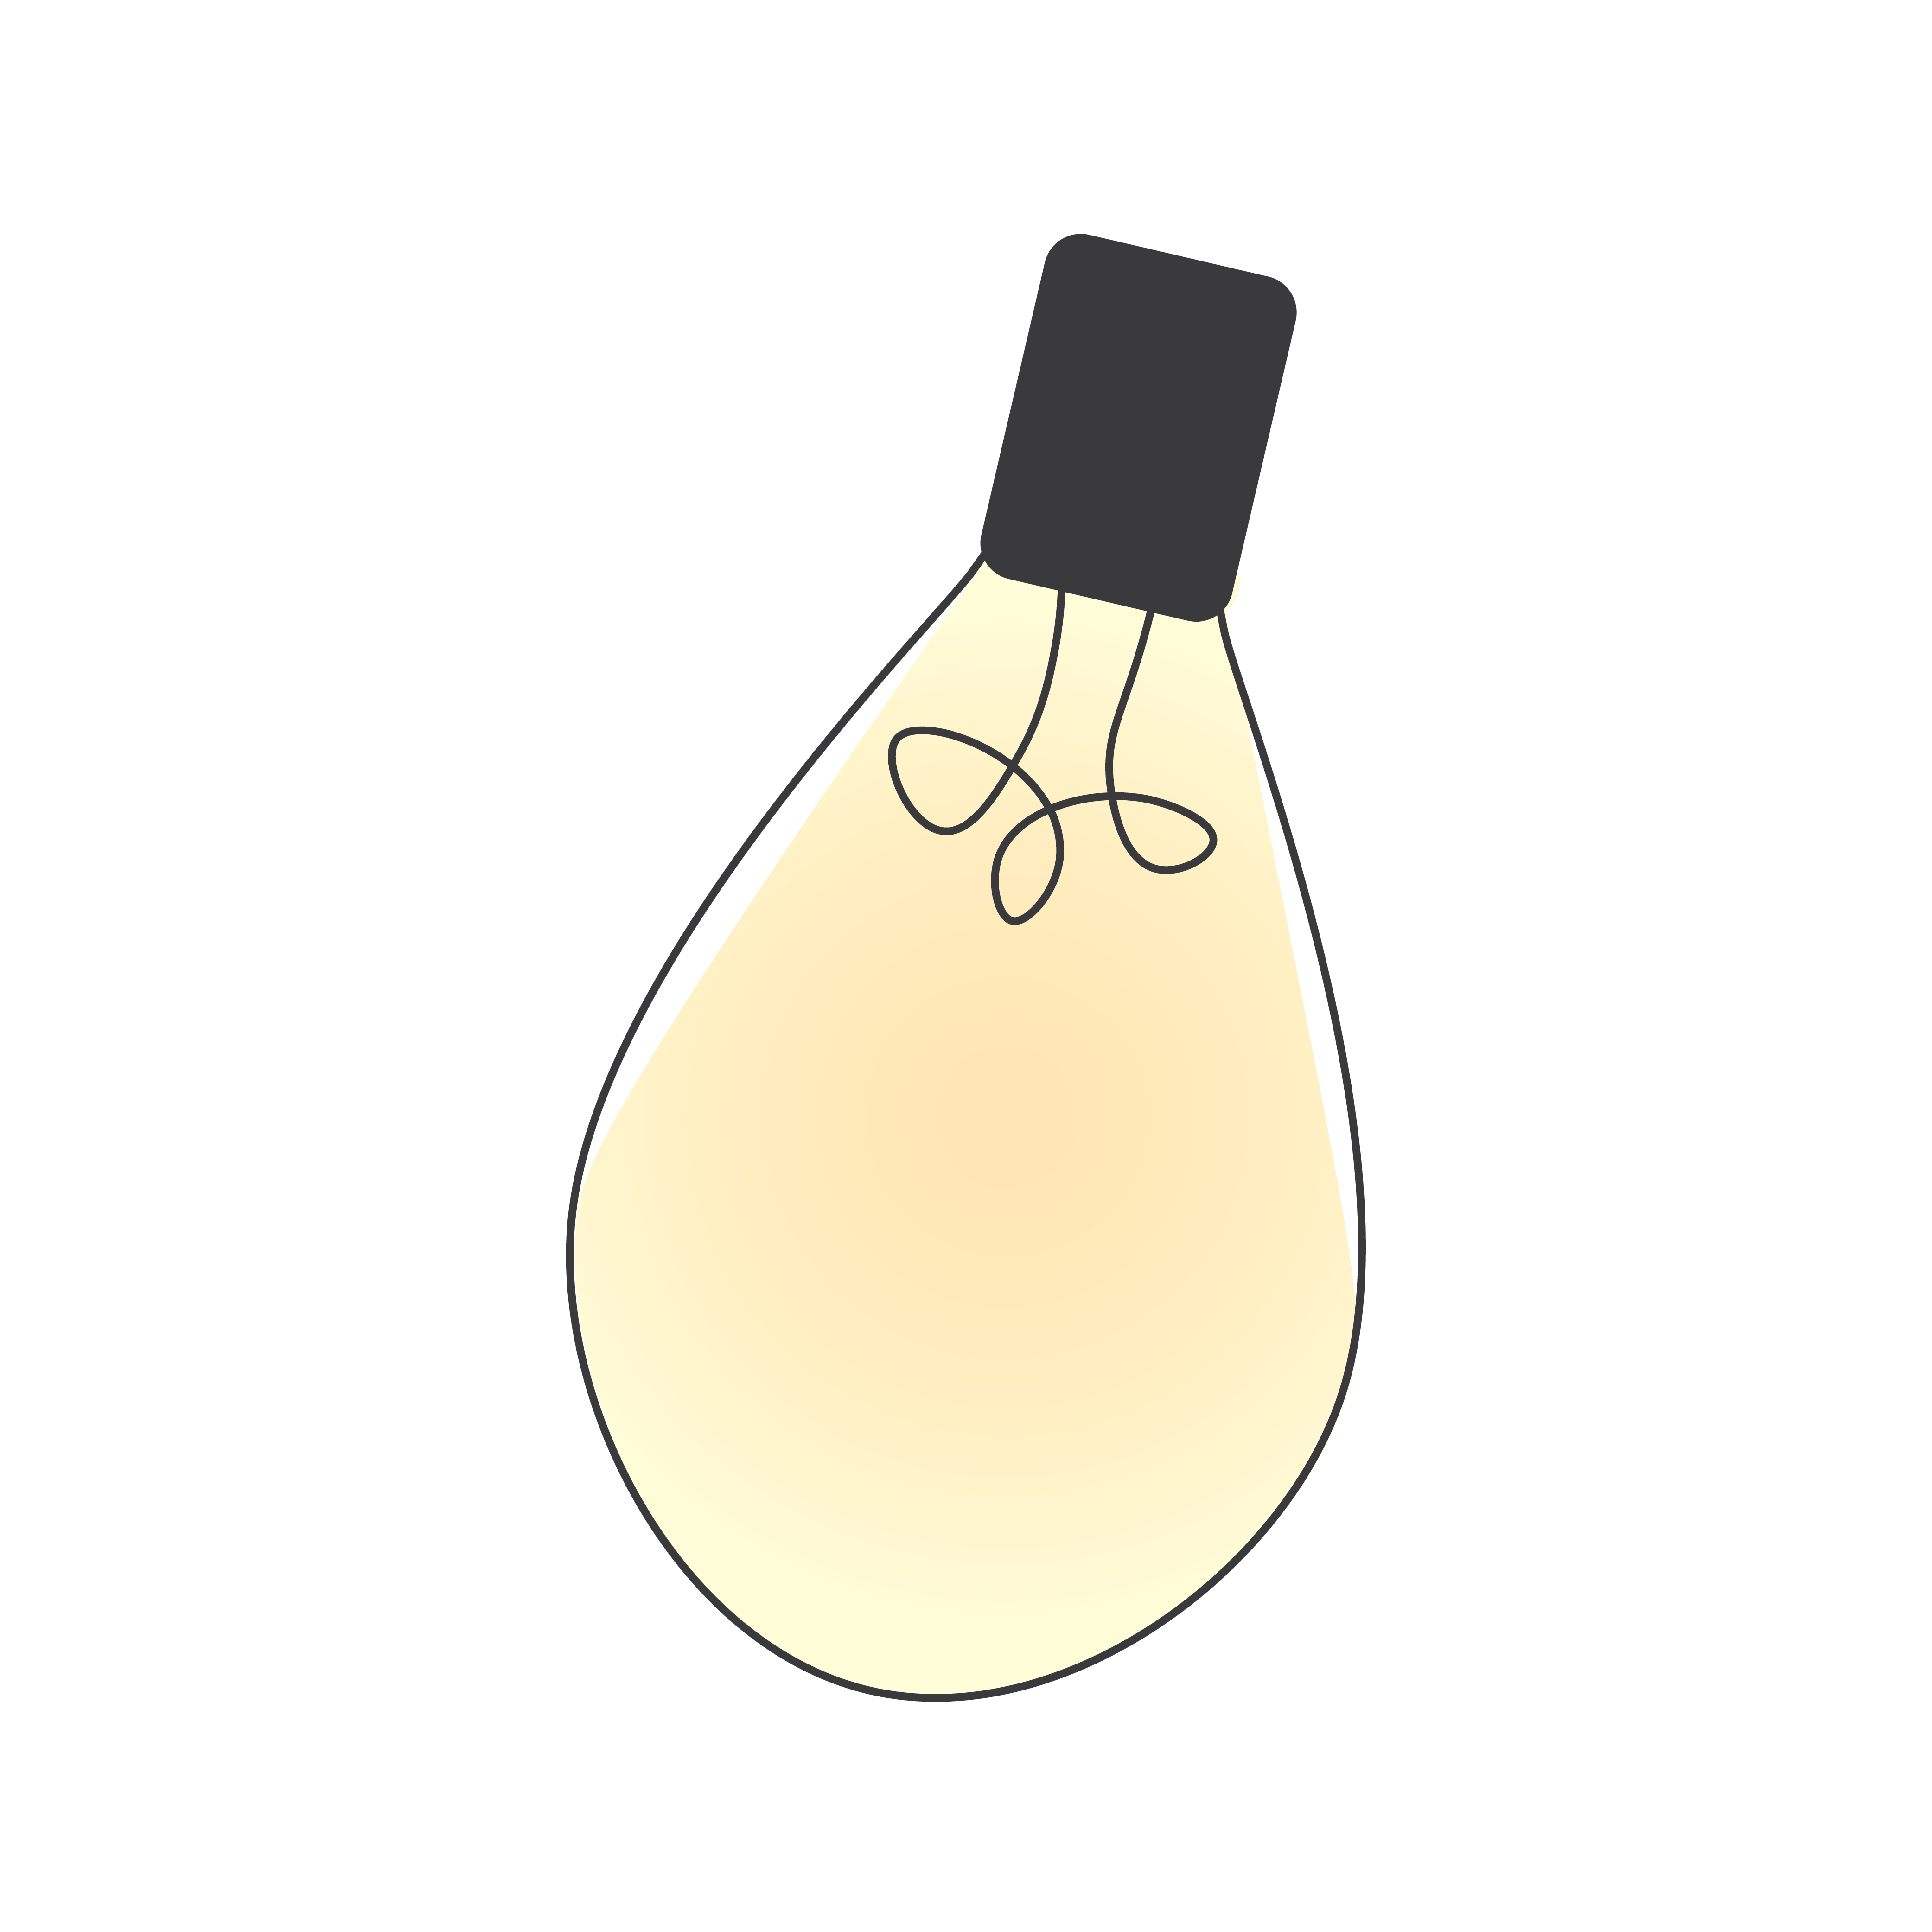 Lightbulb illustration.